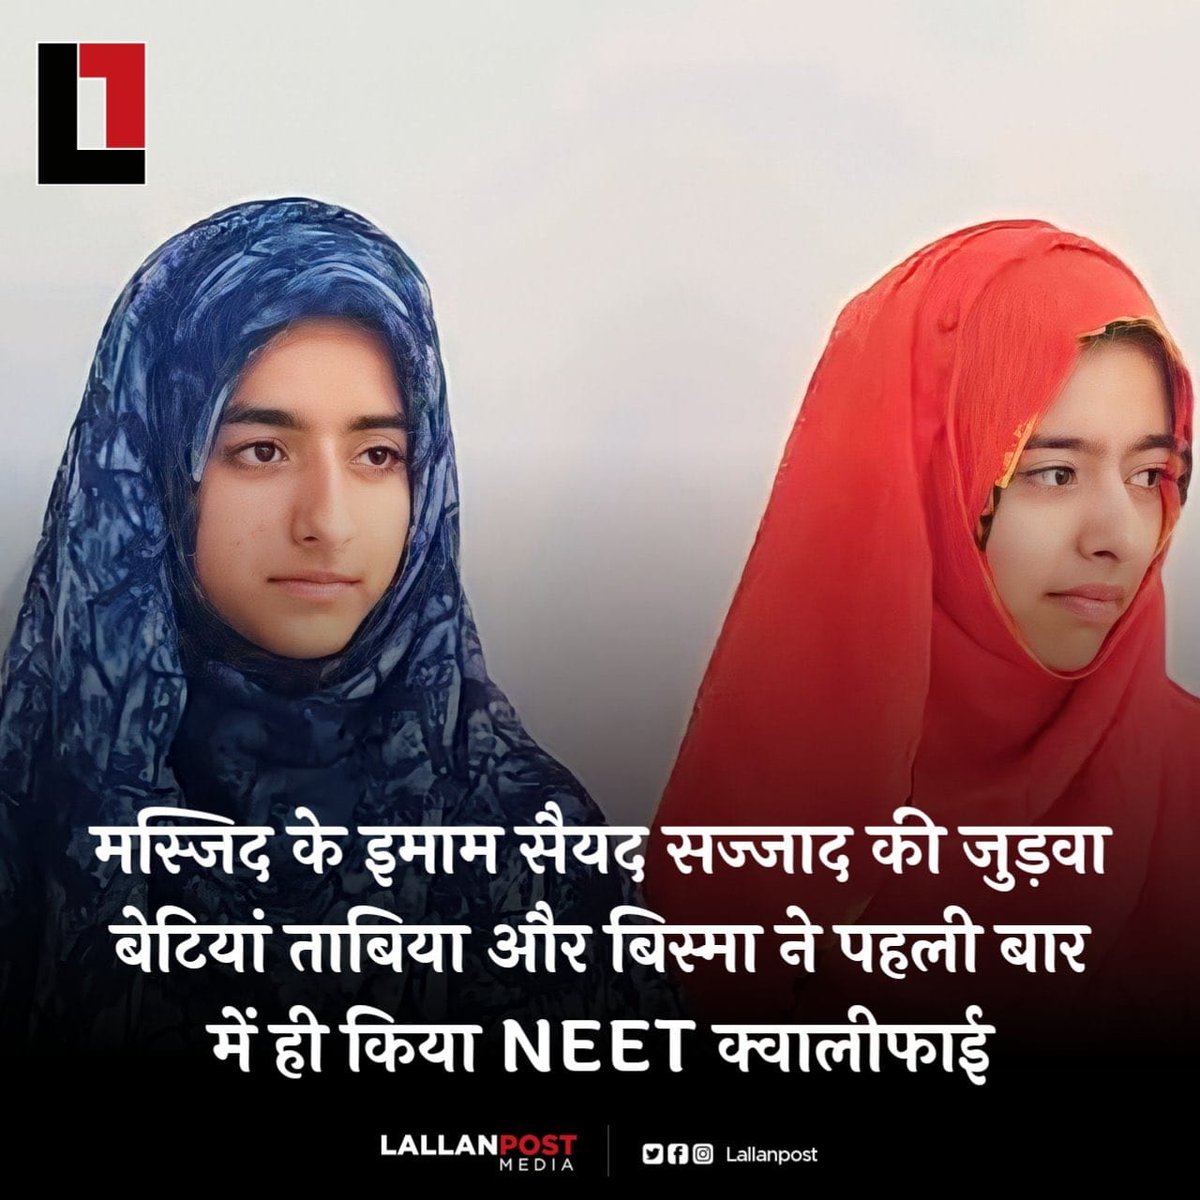 जम्मू–कश्मीर

मस्जिद के इमाम सैयद सज्जाद की दो बेटियों ने NEET क्वॉलीफाई कर लिया है!

कमाल की बात यह है कि दोनों बहनें जुड़वा है!
दोनो ने पहले ही प्रयास में नीट परीक्षा पास कर ली!

एक का नाम सैयद साबिया है, दूसरी बहन का नाम सैयद बिस्माह है!
#NEETresult2023